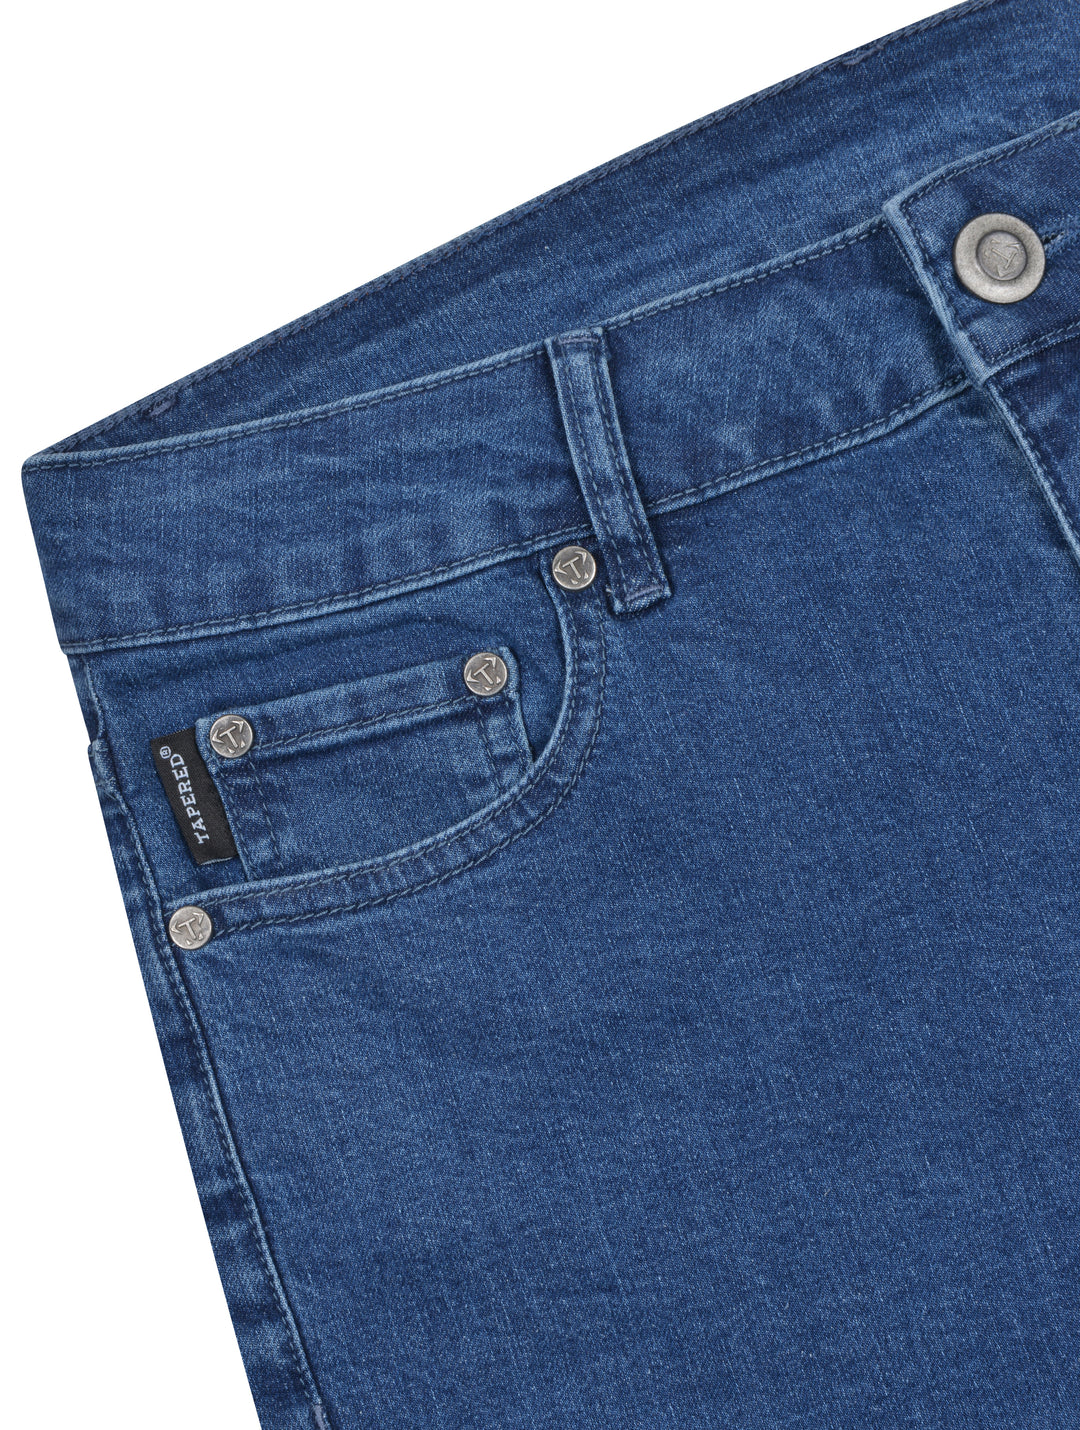 Buy Men Blue Mid Wash Slim Tapered Jeans Online - 790494